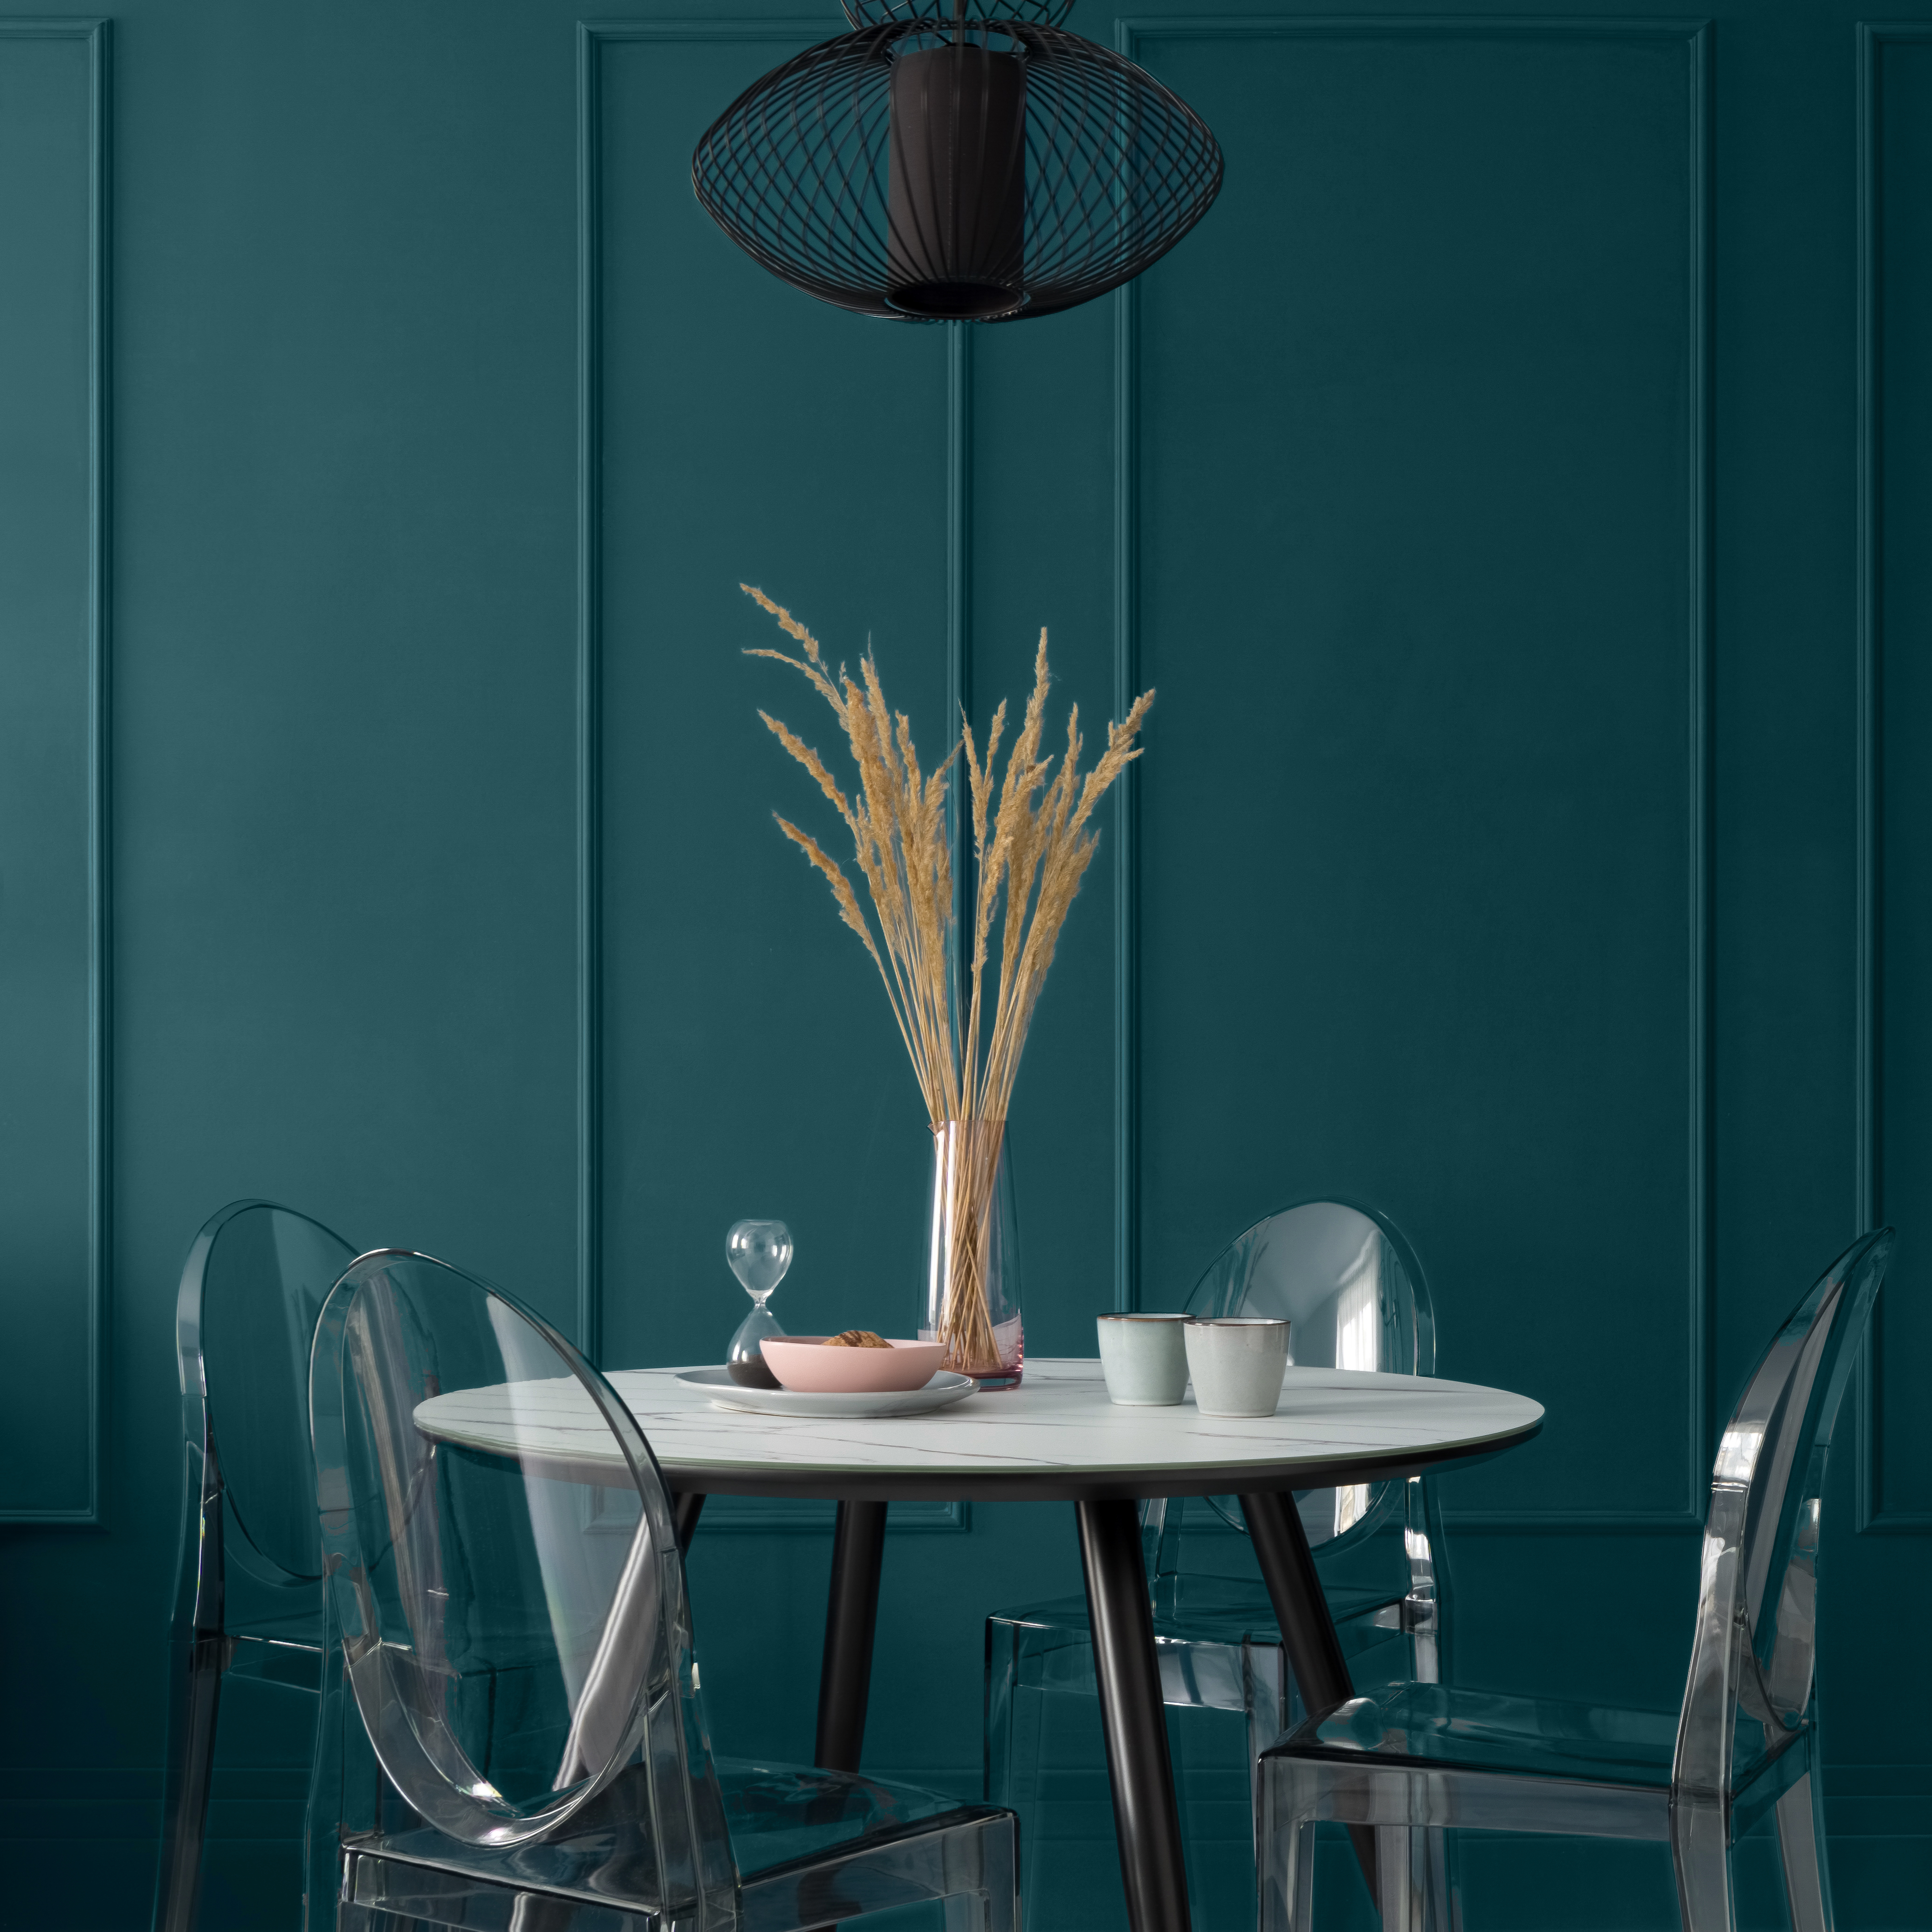 Une salle à manger distinguée avec un mur bleu-vert, une table moderne montée de pieds noirs avec un dessus de table de style marbre, de belles décorations de table, quatre chaises neuves en plastique sous une lampe suspendue noire. Le mur est peint dans une profonde teinte sarcelle appelée Abîme d'océan.